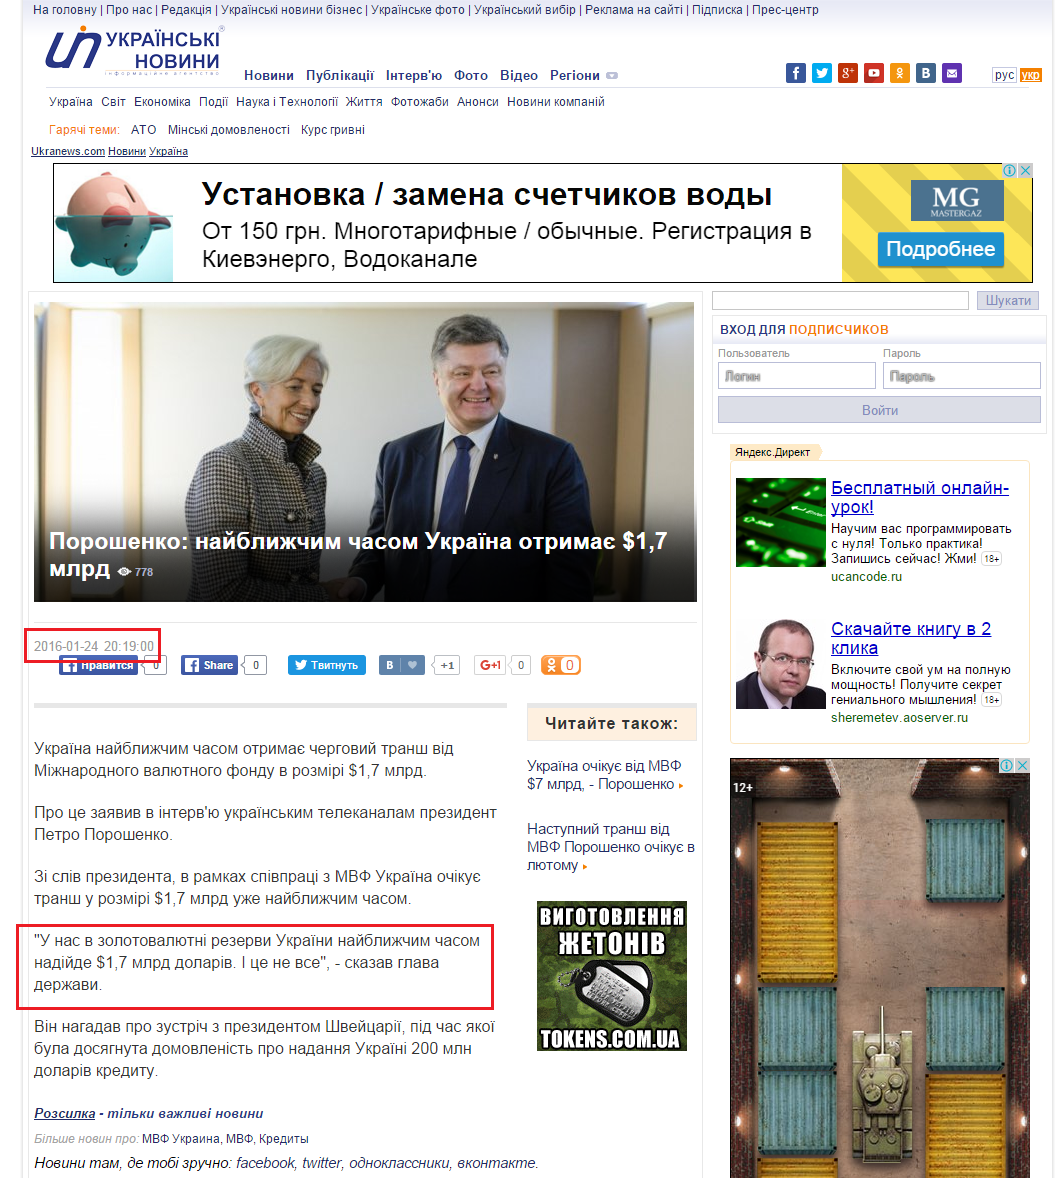 http://ukranews.com/news/197072.Poroshenko-V-blizhayshee-vremya-Ukraina-poluchit-17-mlrd.uk